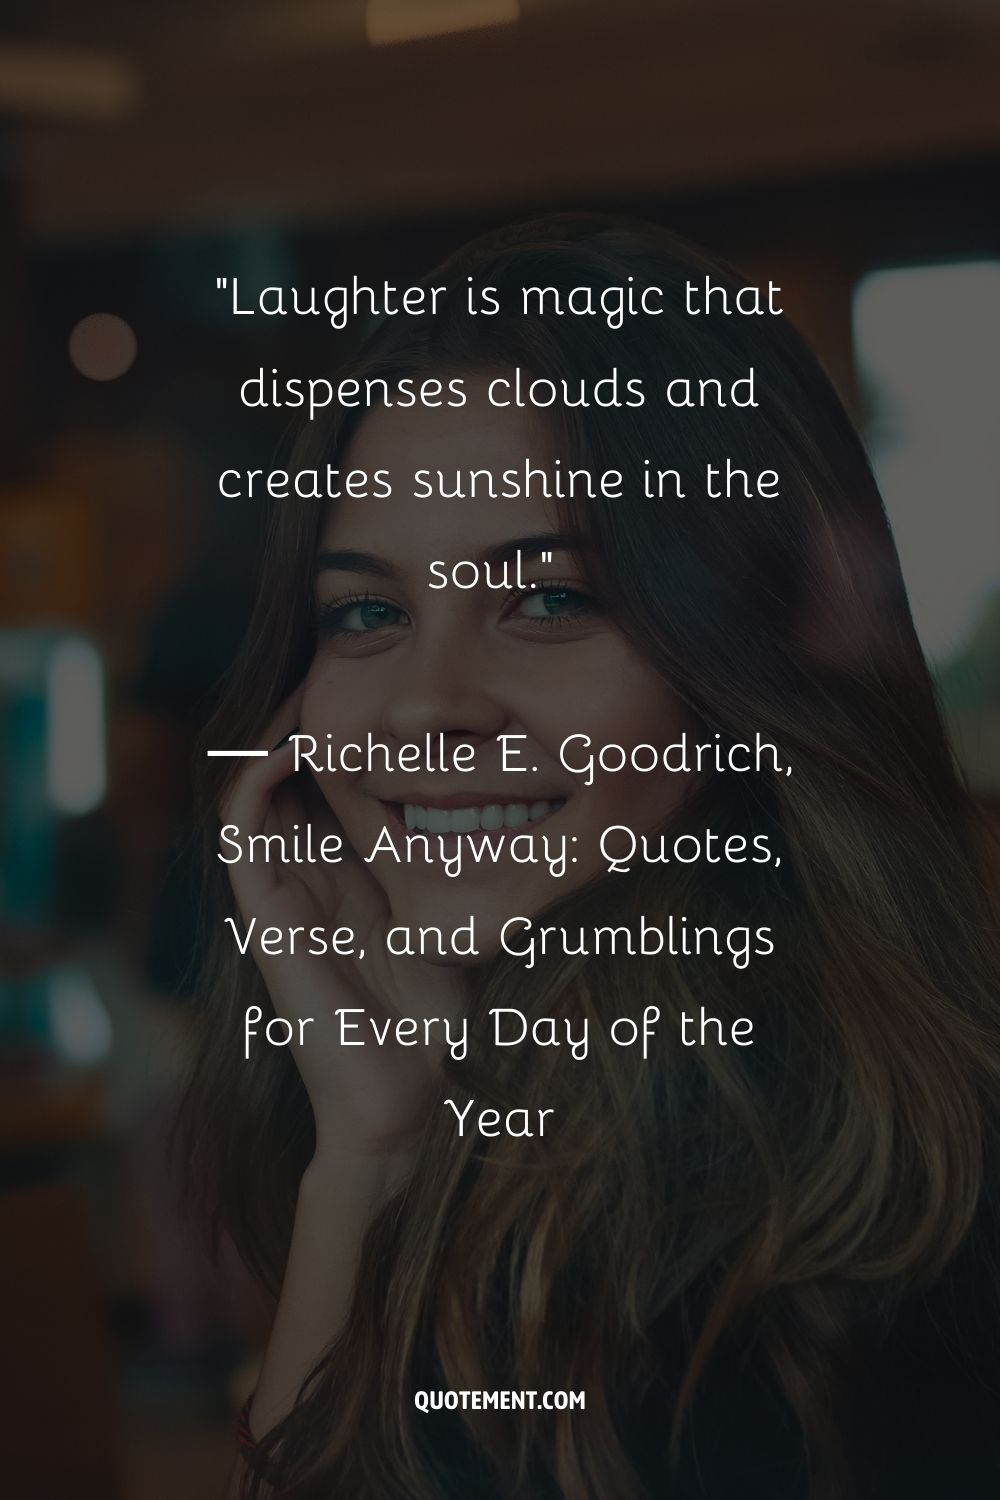 La risa es magia que disipa las nubes y crea sol en el alma